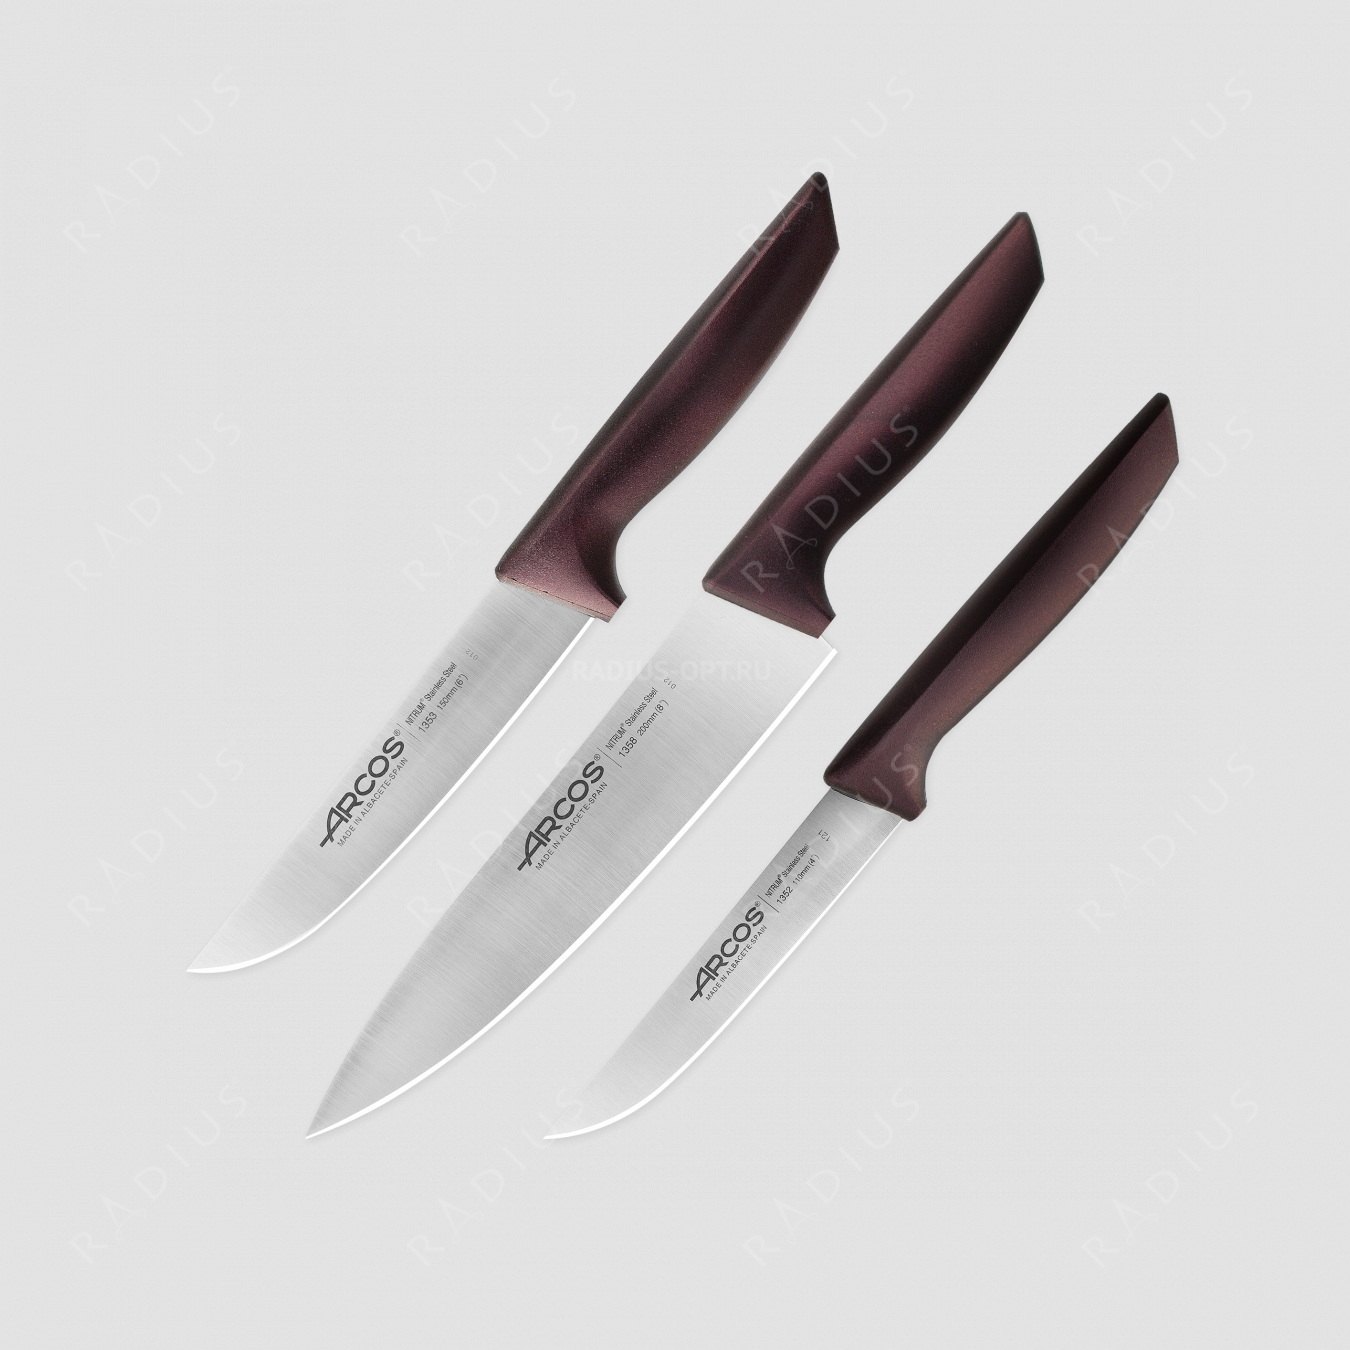 Набор кухонных ножей в коробке, 3 шт (110 мм, 150 мм, 200 мм,) бордовые ручки, серия Niza, ARCOS, Испания